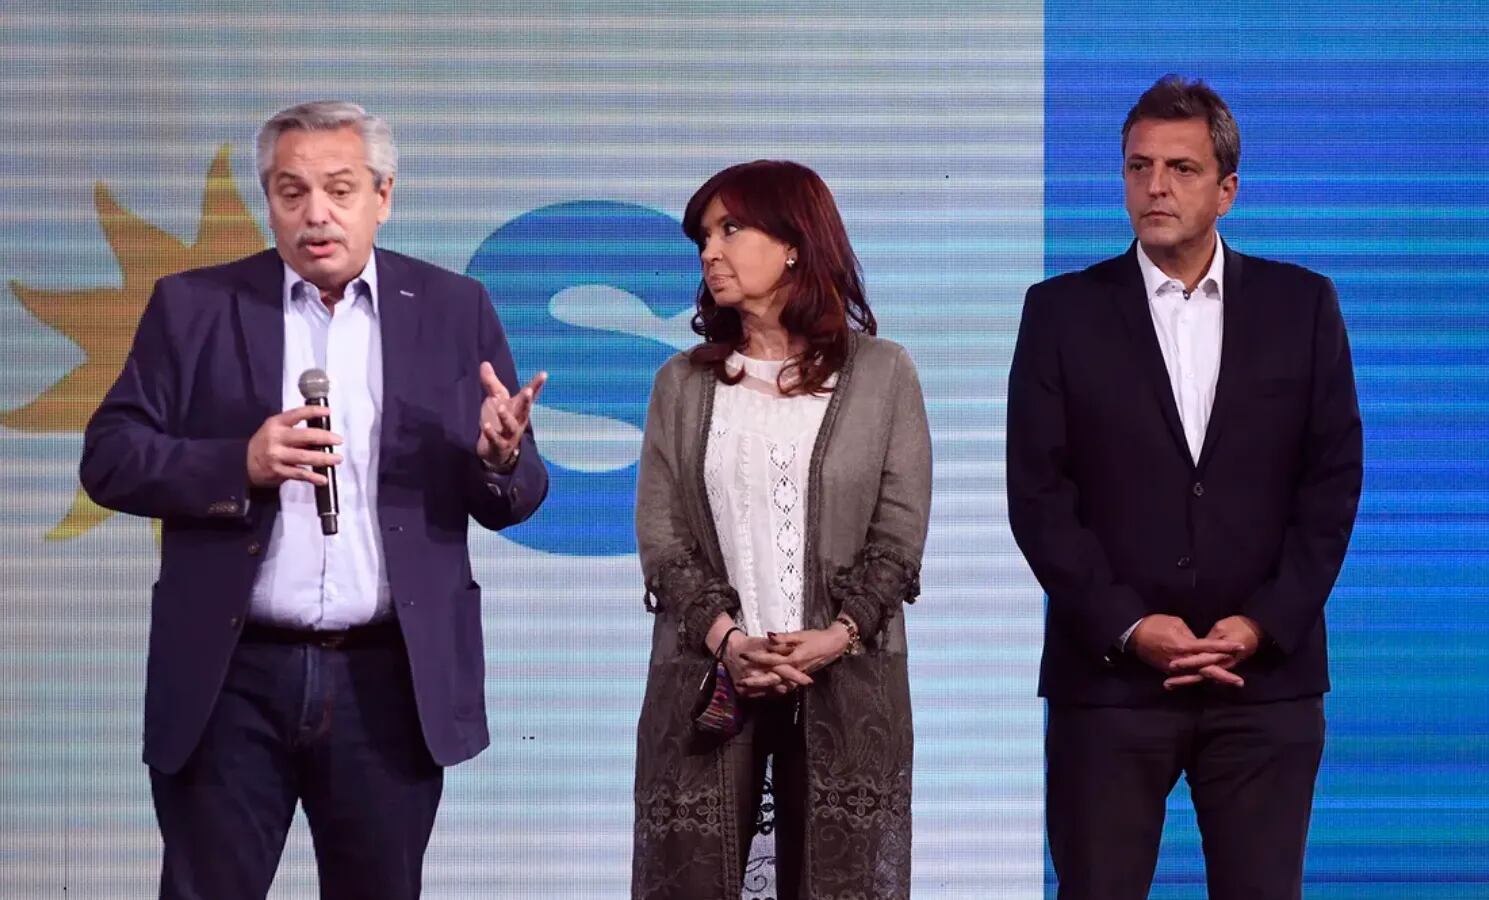 Alberto Fernández y Cristina Kirchner ya renunciaron a ser candidatos presidenciales. ¿Queda en pie Sergio Massa?